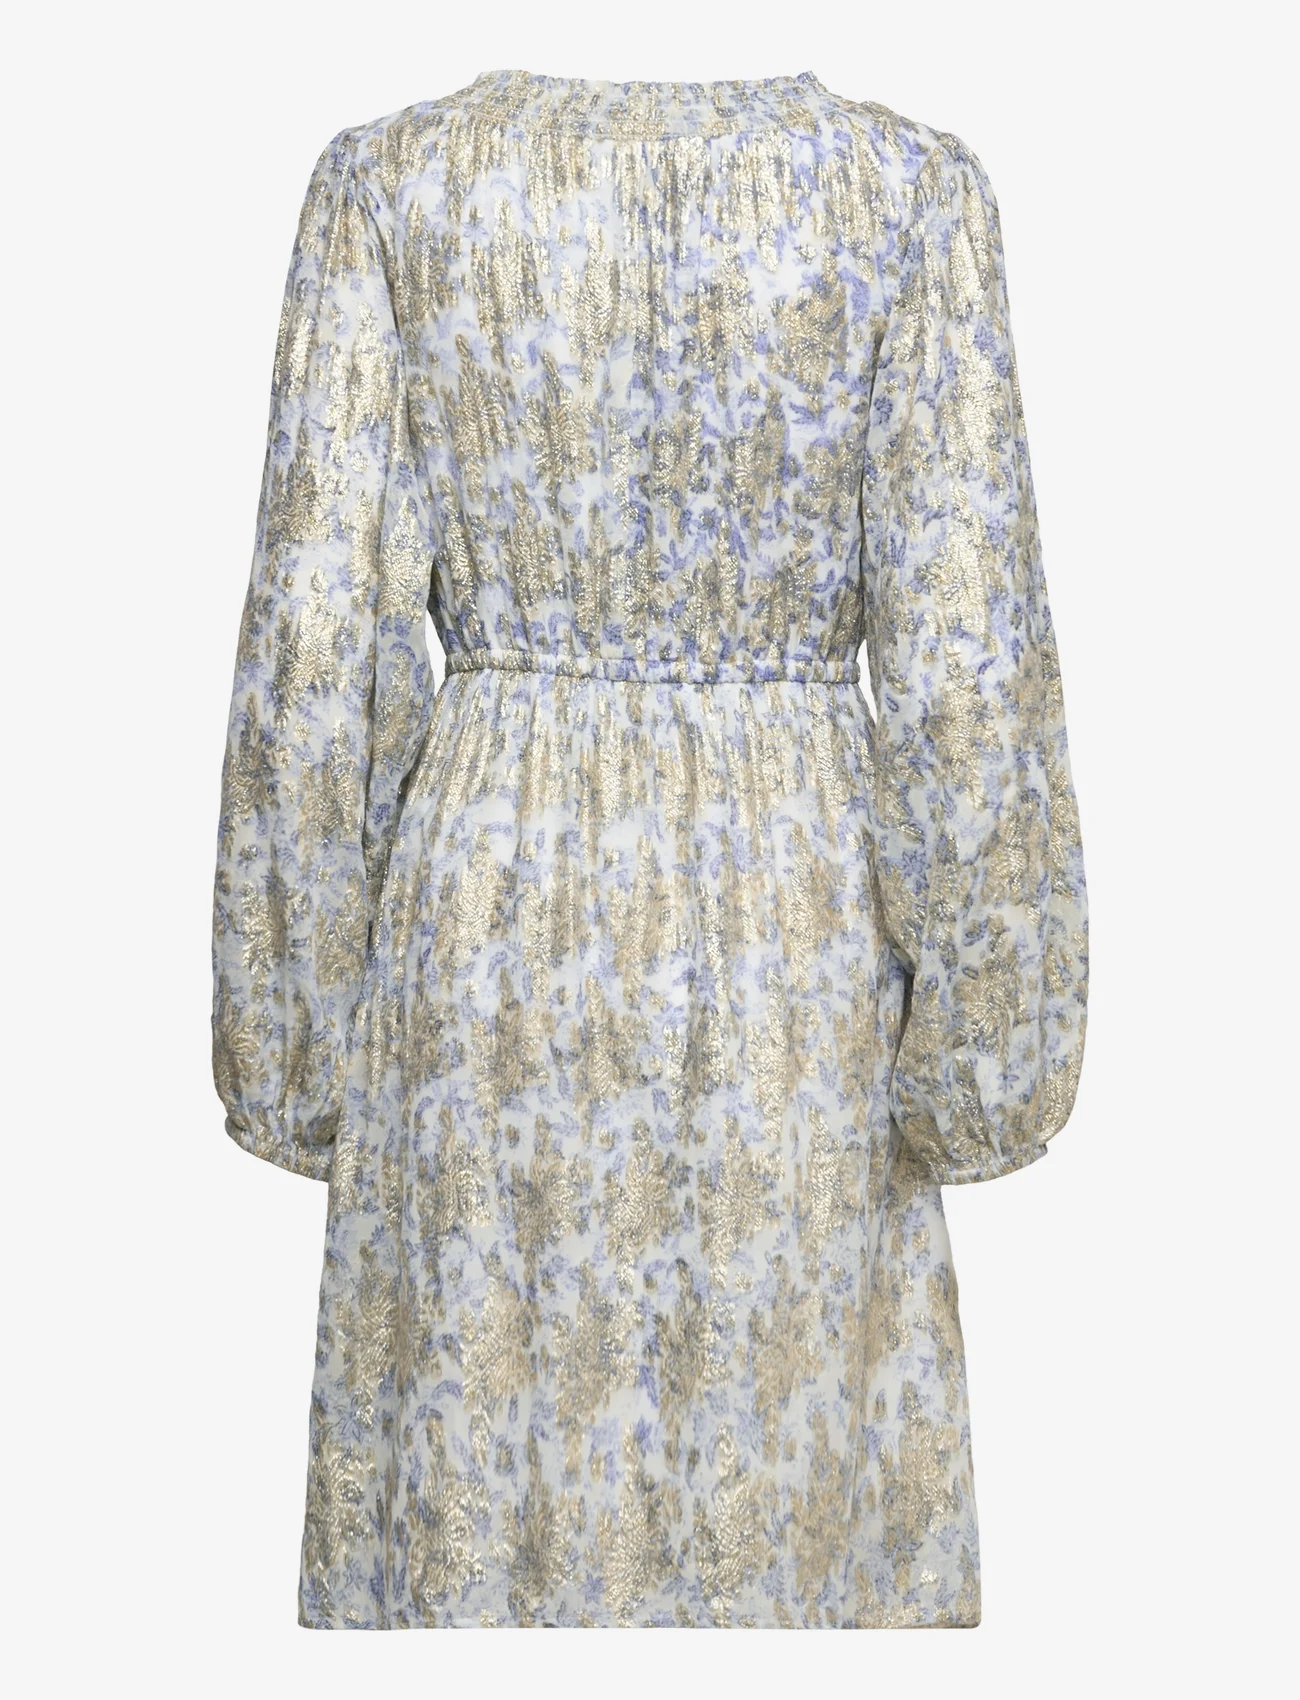 Sofie Schnoor - Dress - odzież imprezowa w cenach outletowych - bright blue - 1